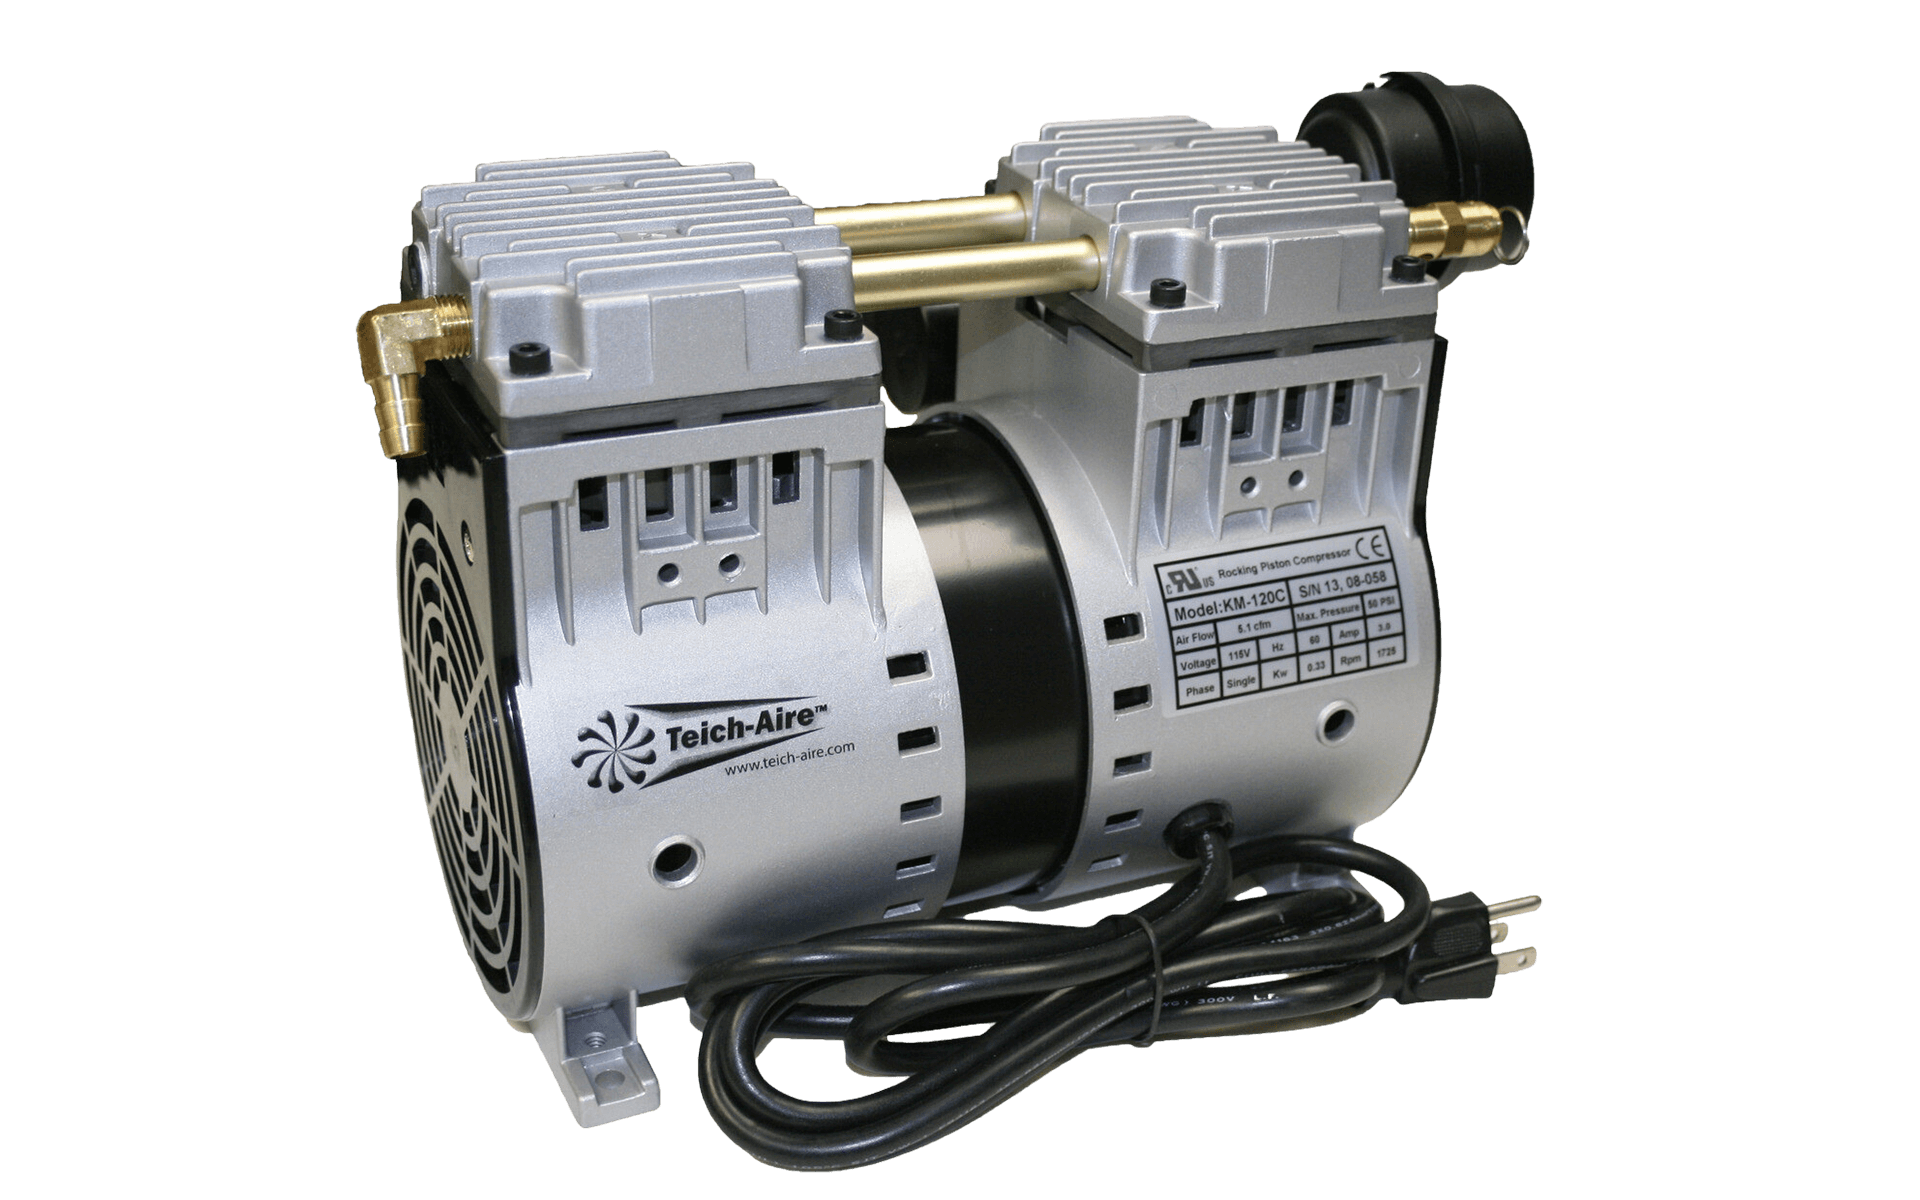 Teich-Aire KM-120 1/2 HP Dugout Aeration Compressor (120V)